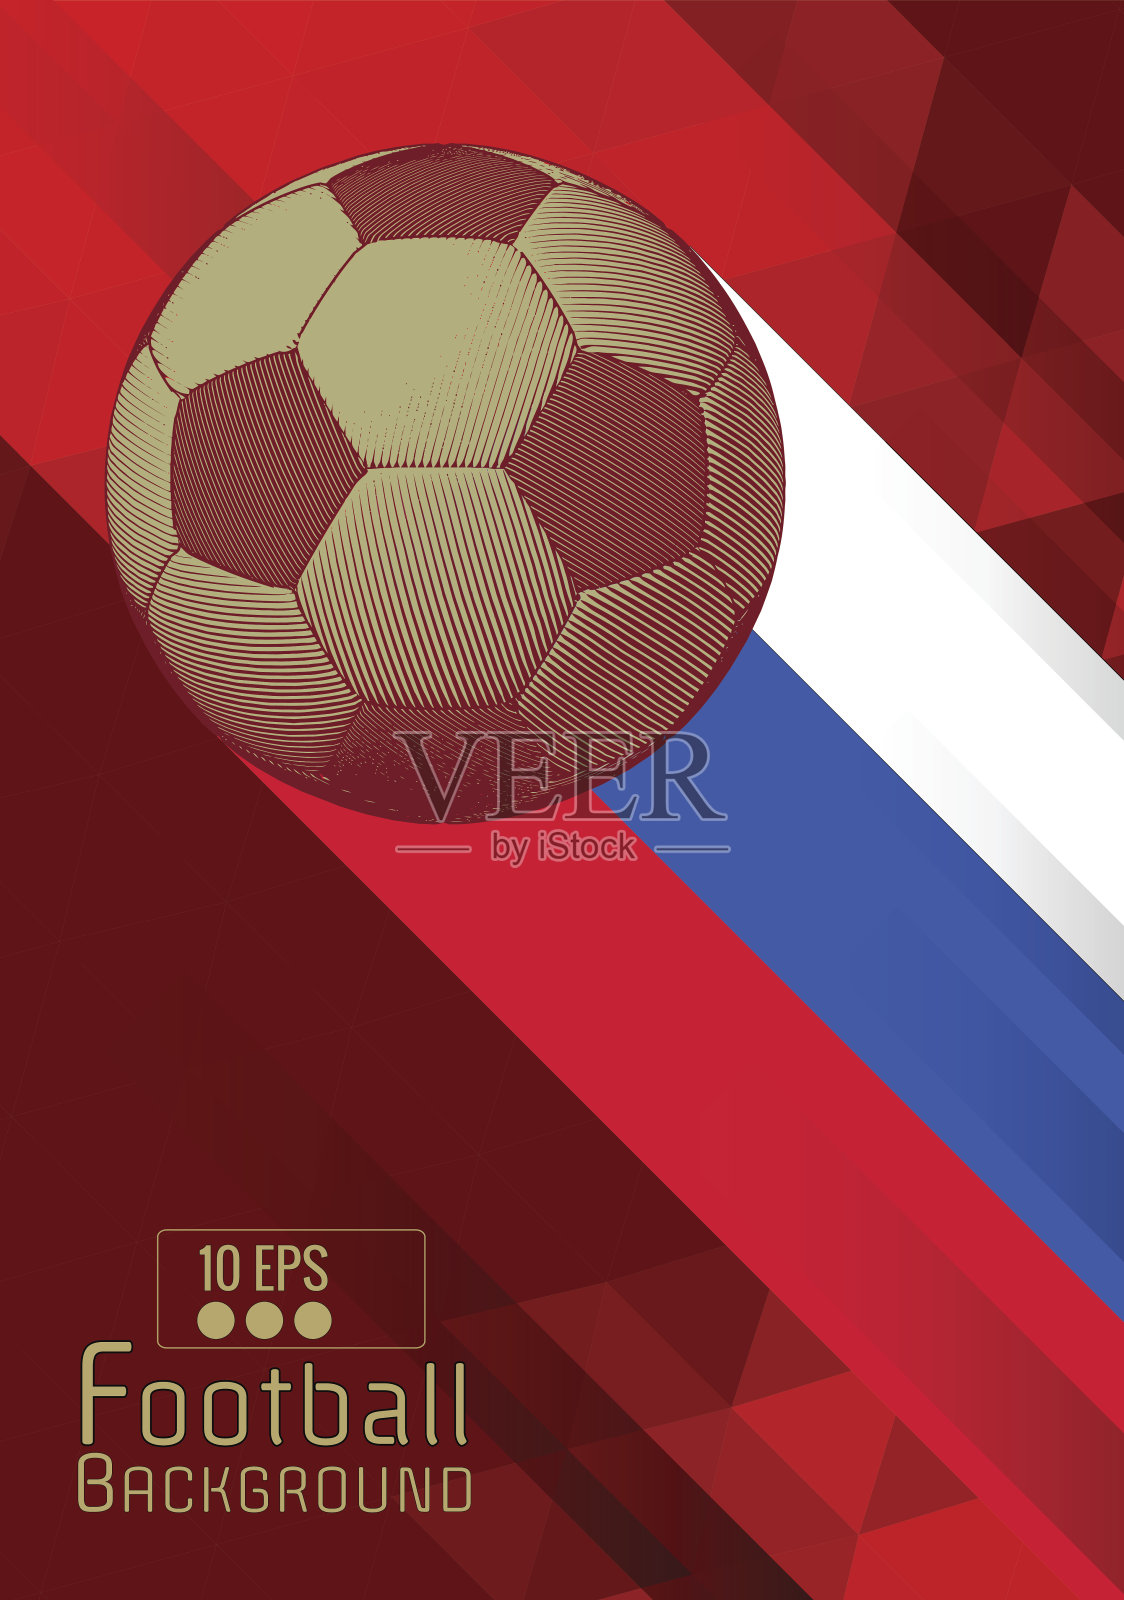 雕刻足球图形布局与颜色条纹在红色BG设计模板素材